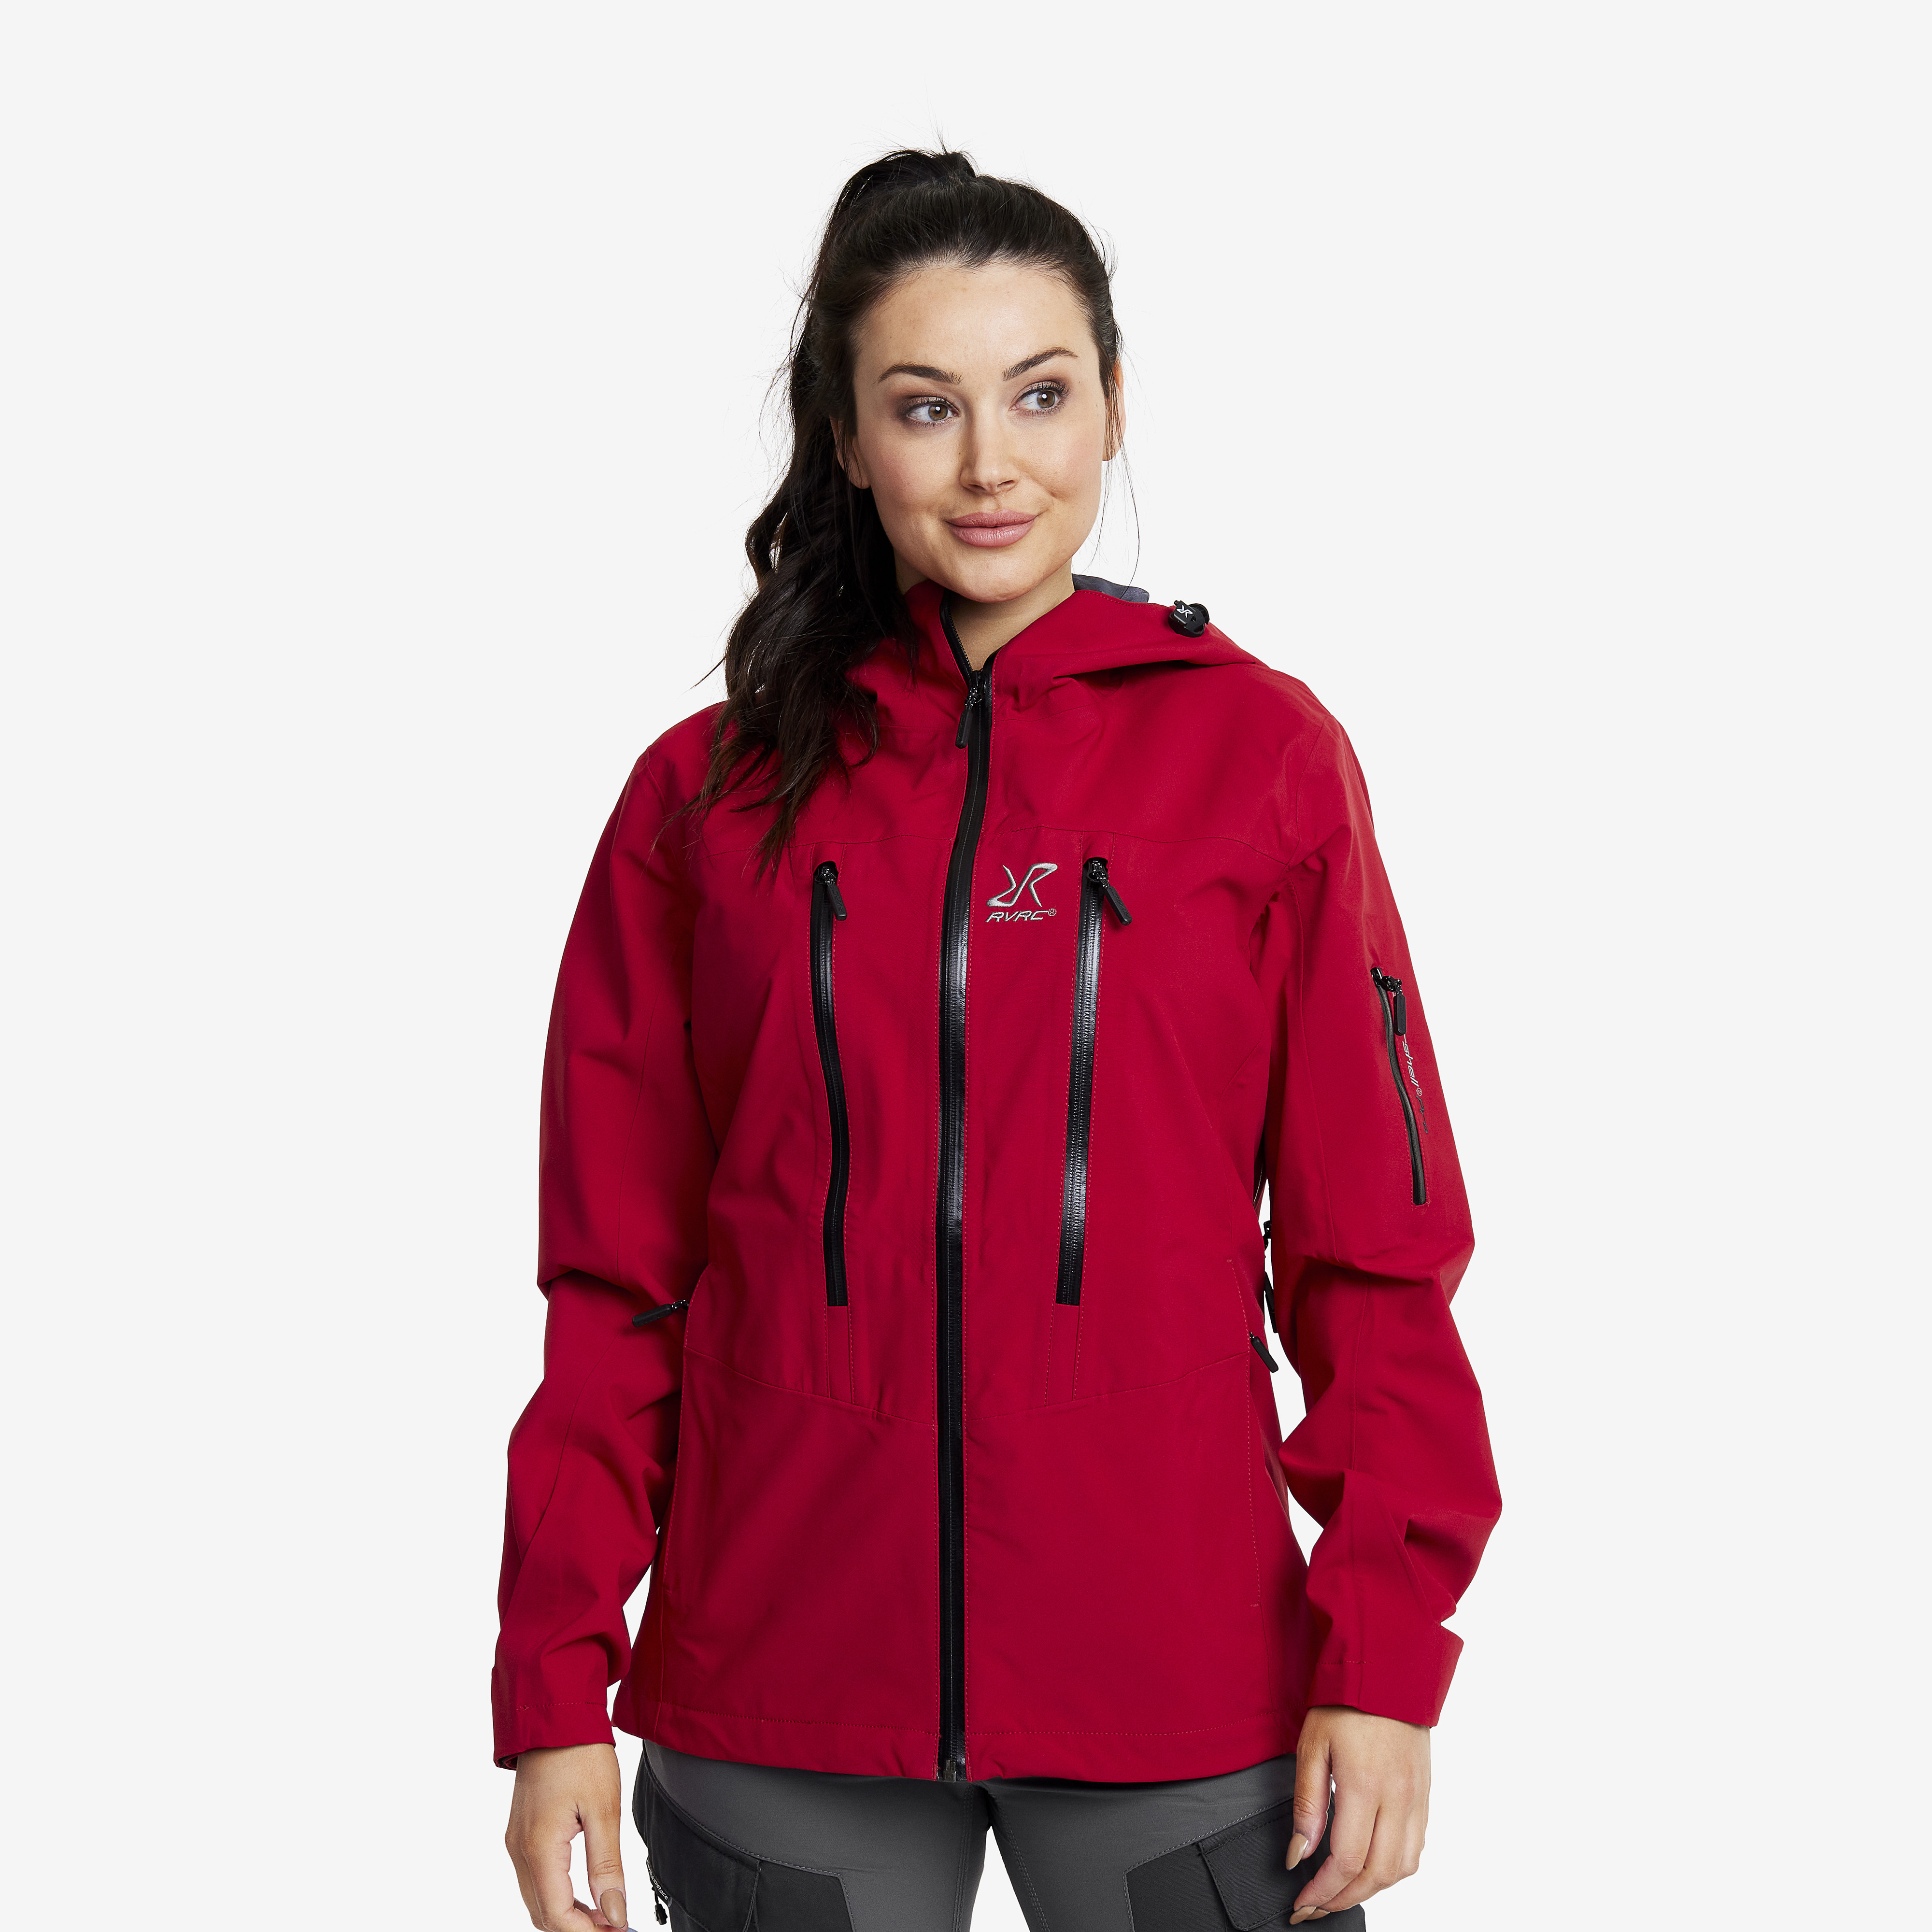 Whisper rain jacket for women in red